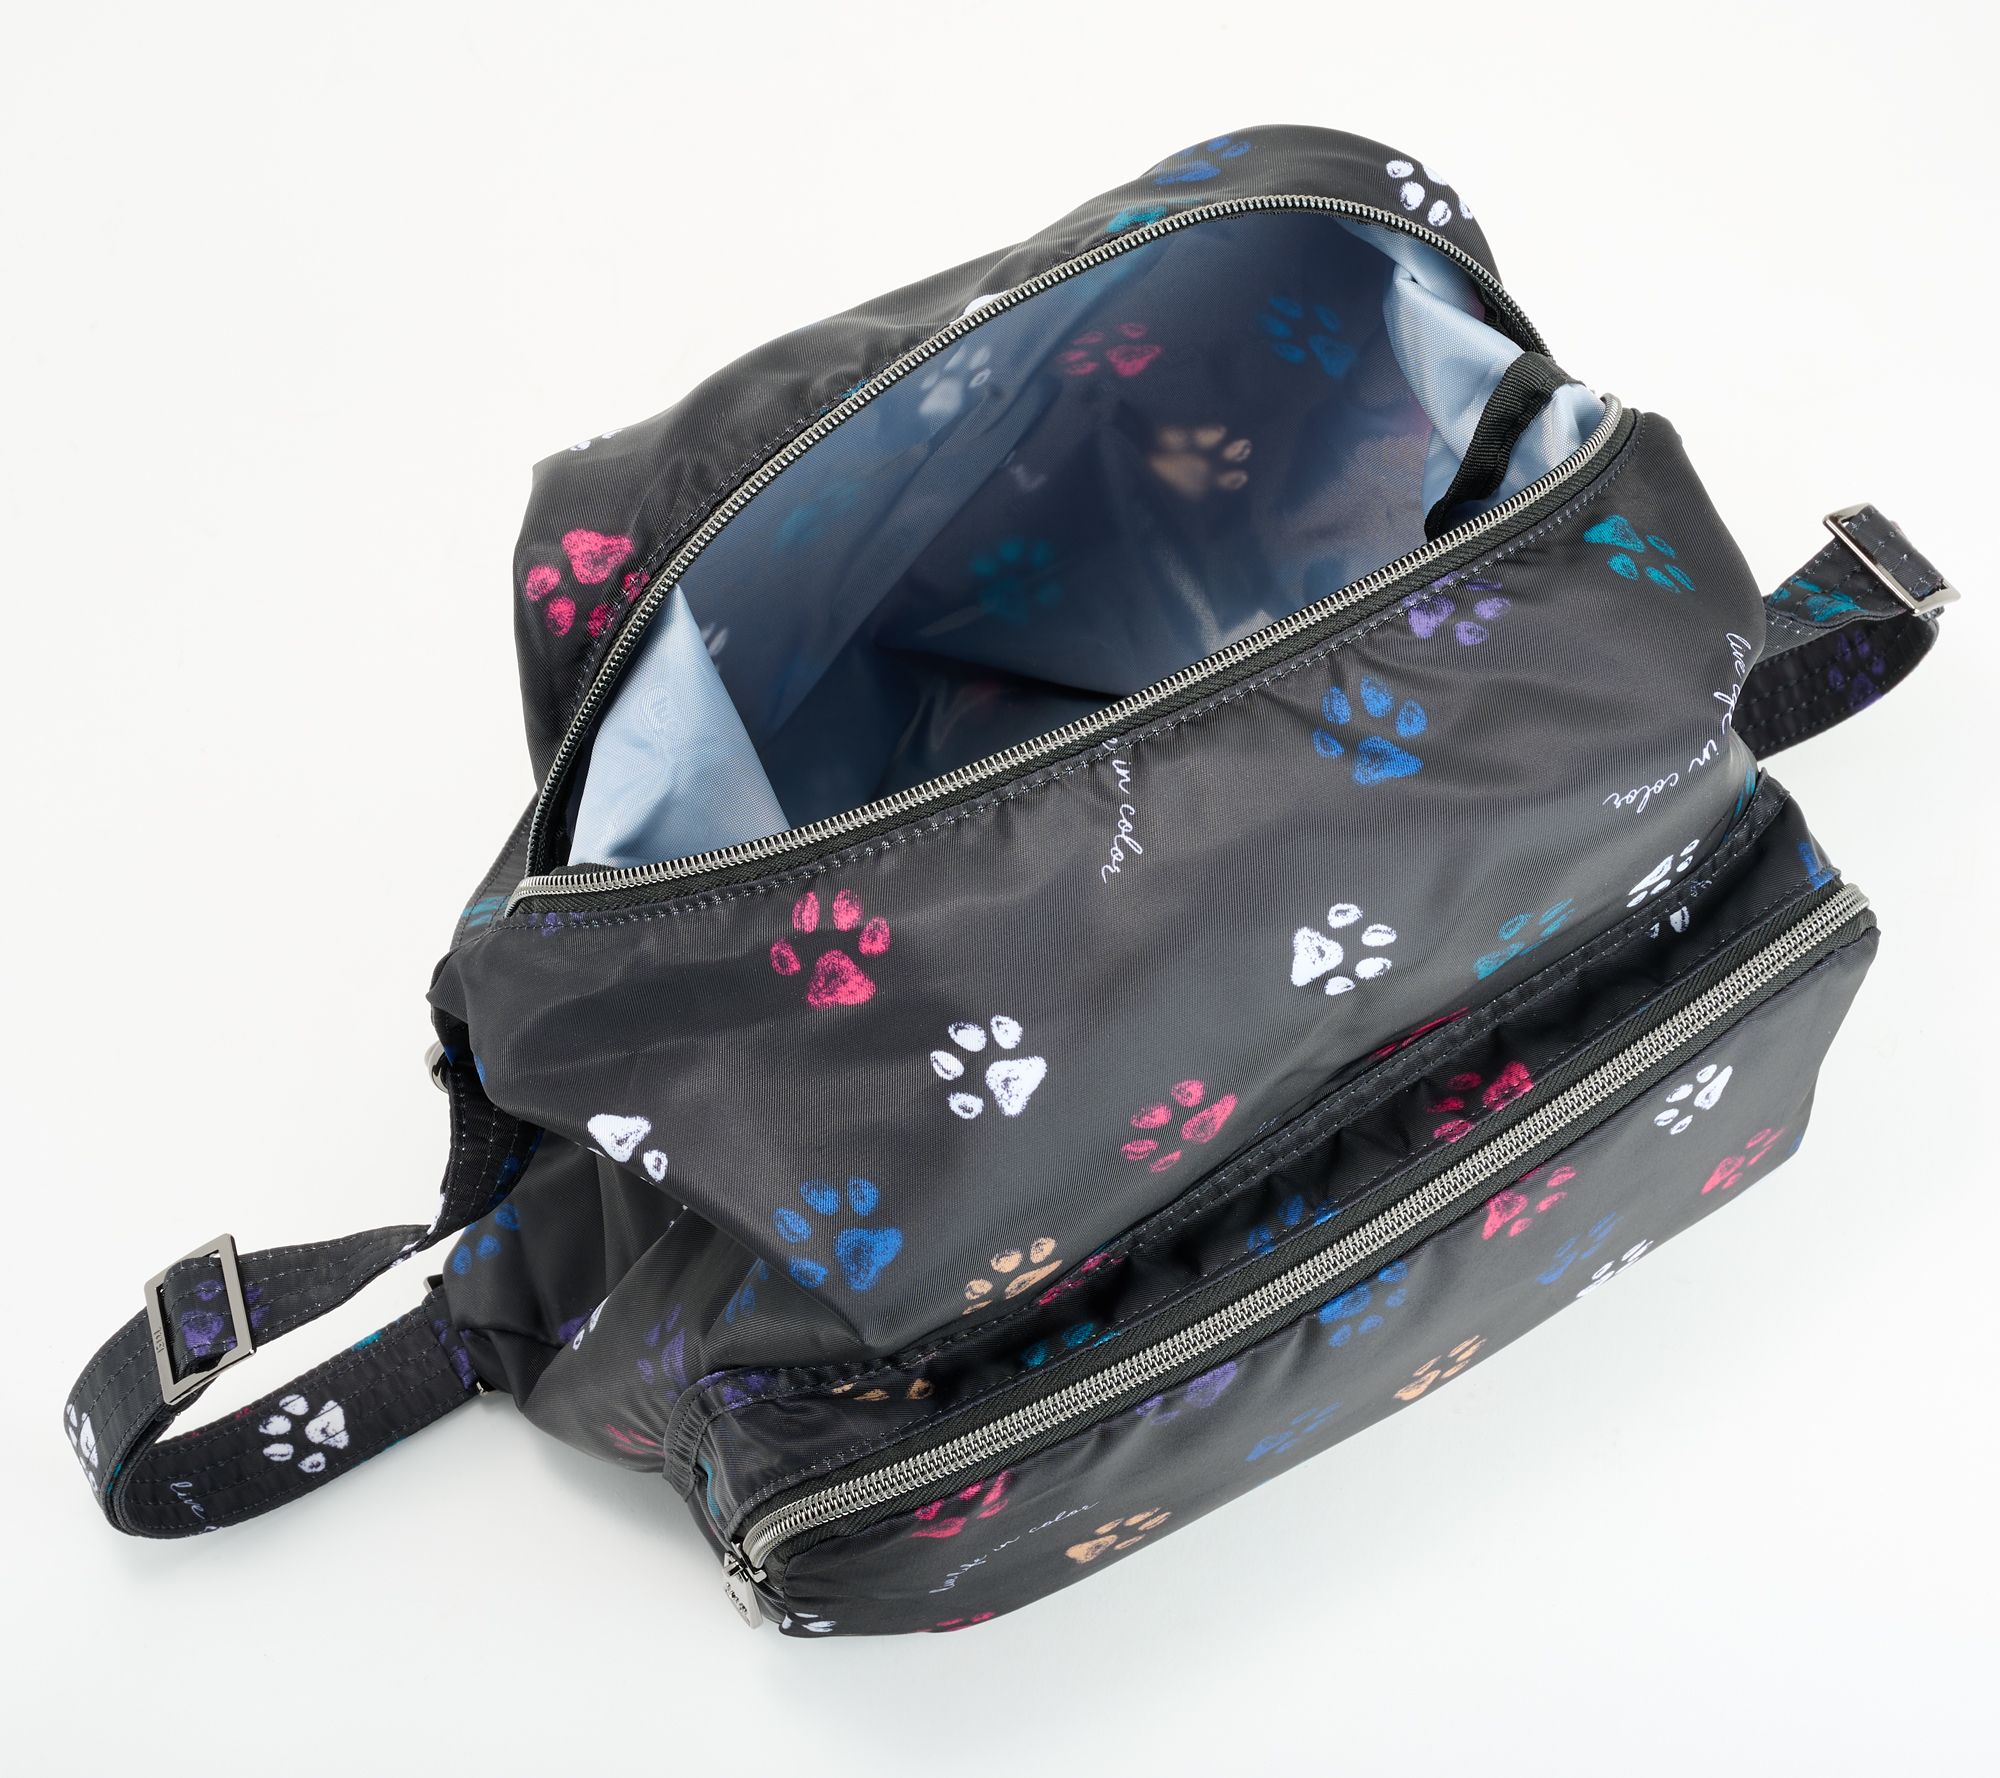 Zipliner Packable Convertible Hobo Bag 